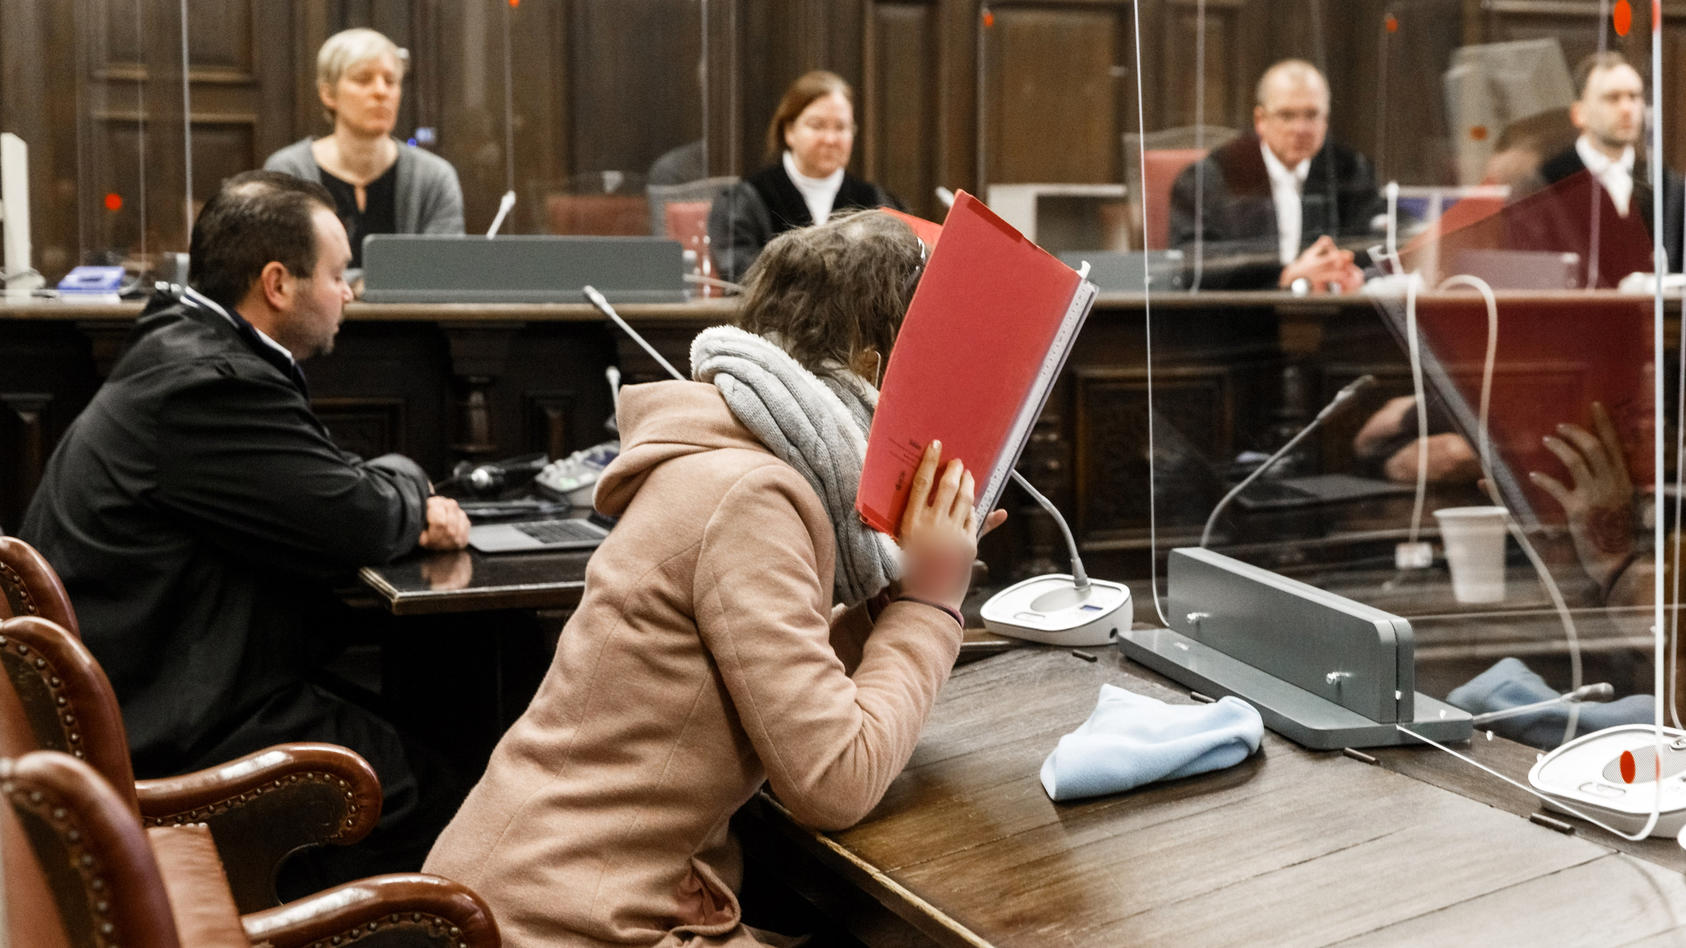 23.12.2020, Hamburg: Die 37-jährige Angeklagte (vorne) sitzt im Gerichtssaal neben ihrem Anwalt und verbirgt ihr Gesicht hinter einem Aktendeckel im Prozess wegen Mordes an ihrem 80-jährigem Ex-Freund. Der Angeklagten wird vorgeworfen, im April ihren